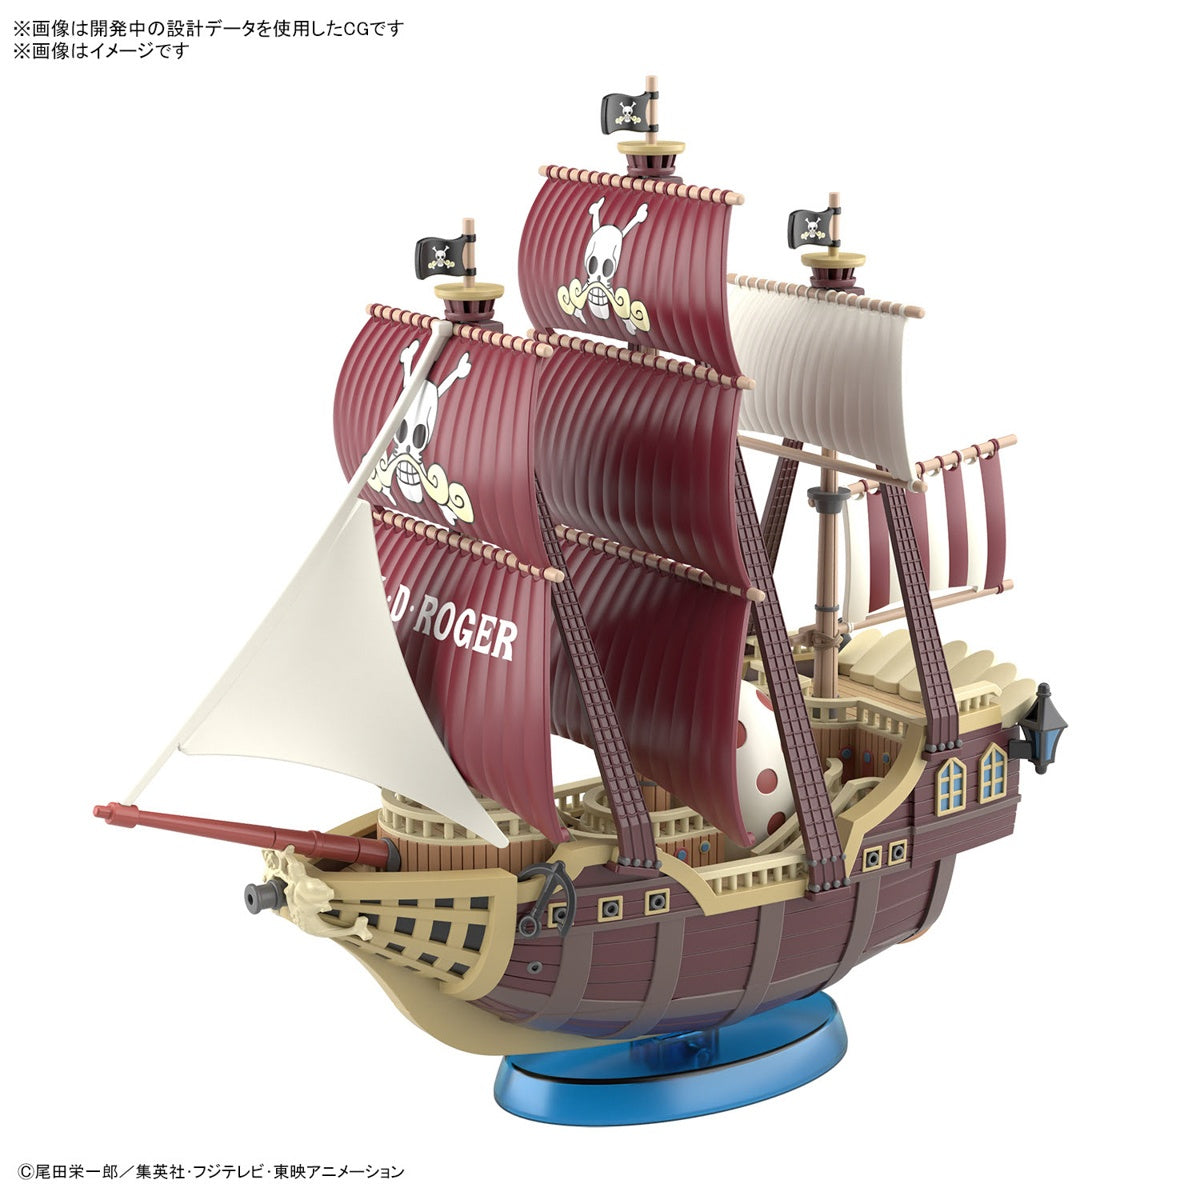 Bandai One Piece Grand Ship Collection Oro Jackson